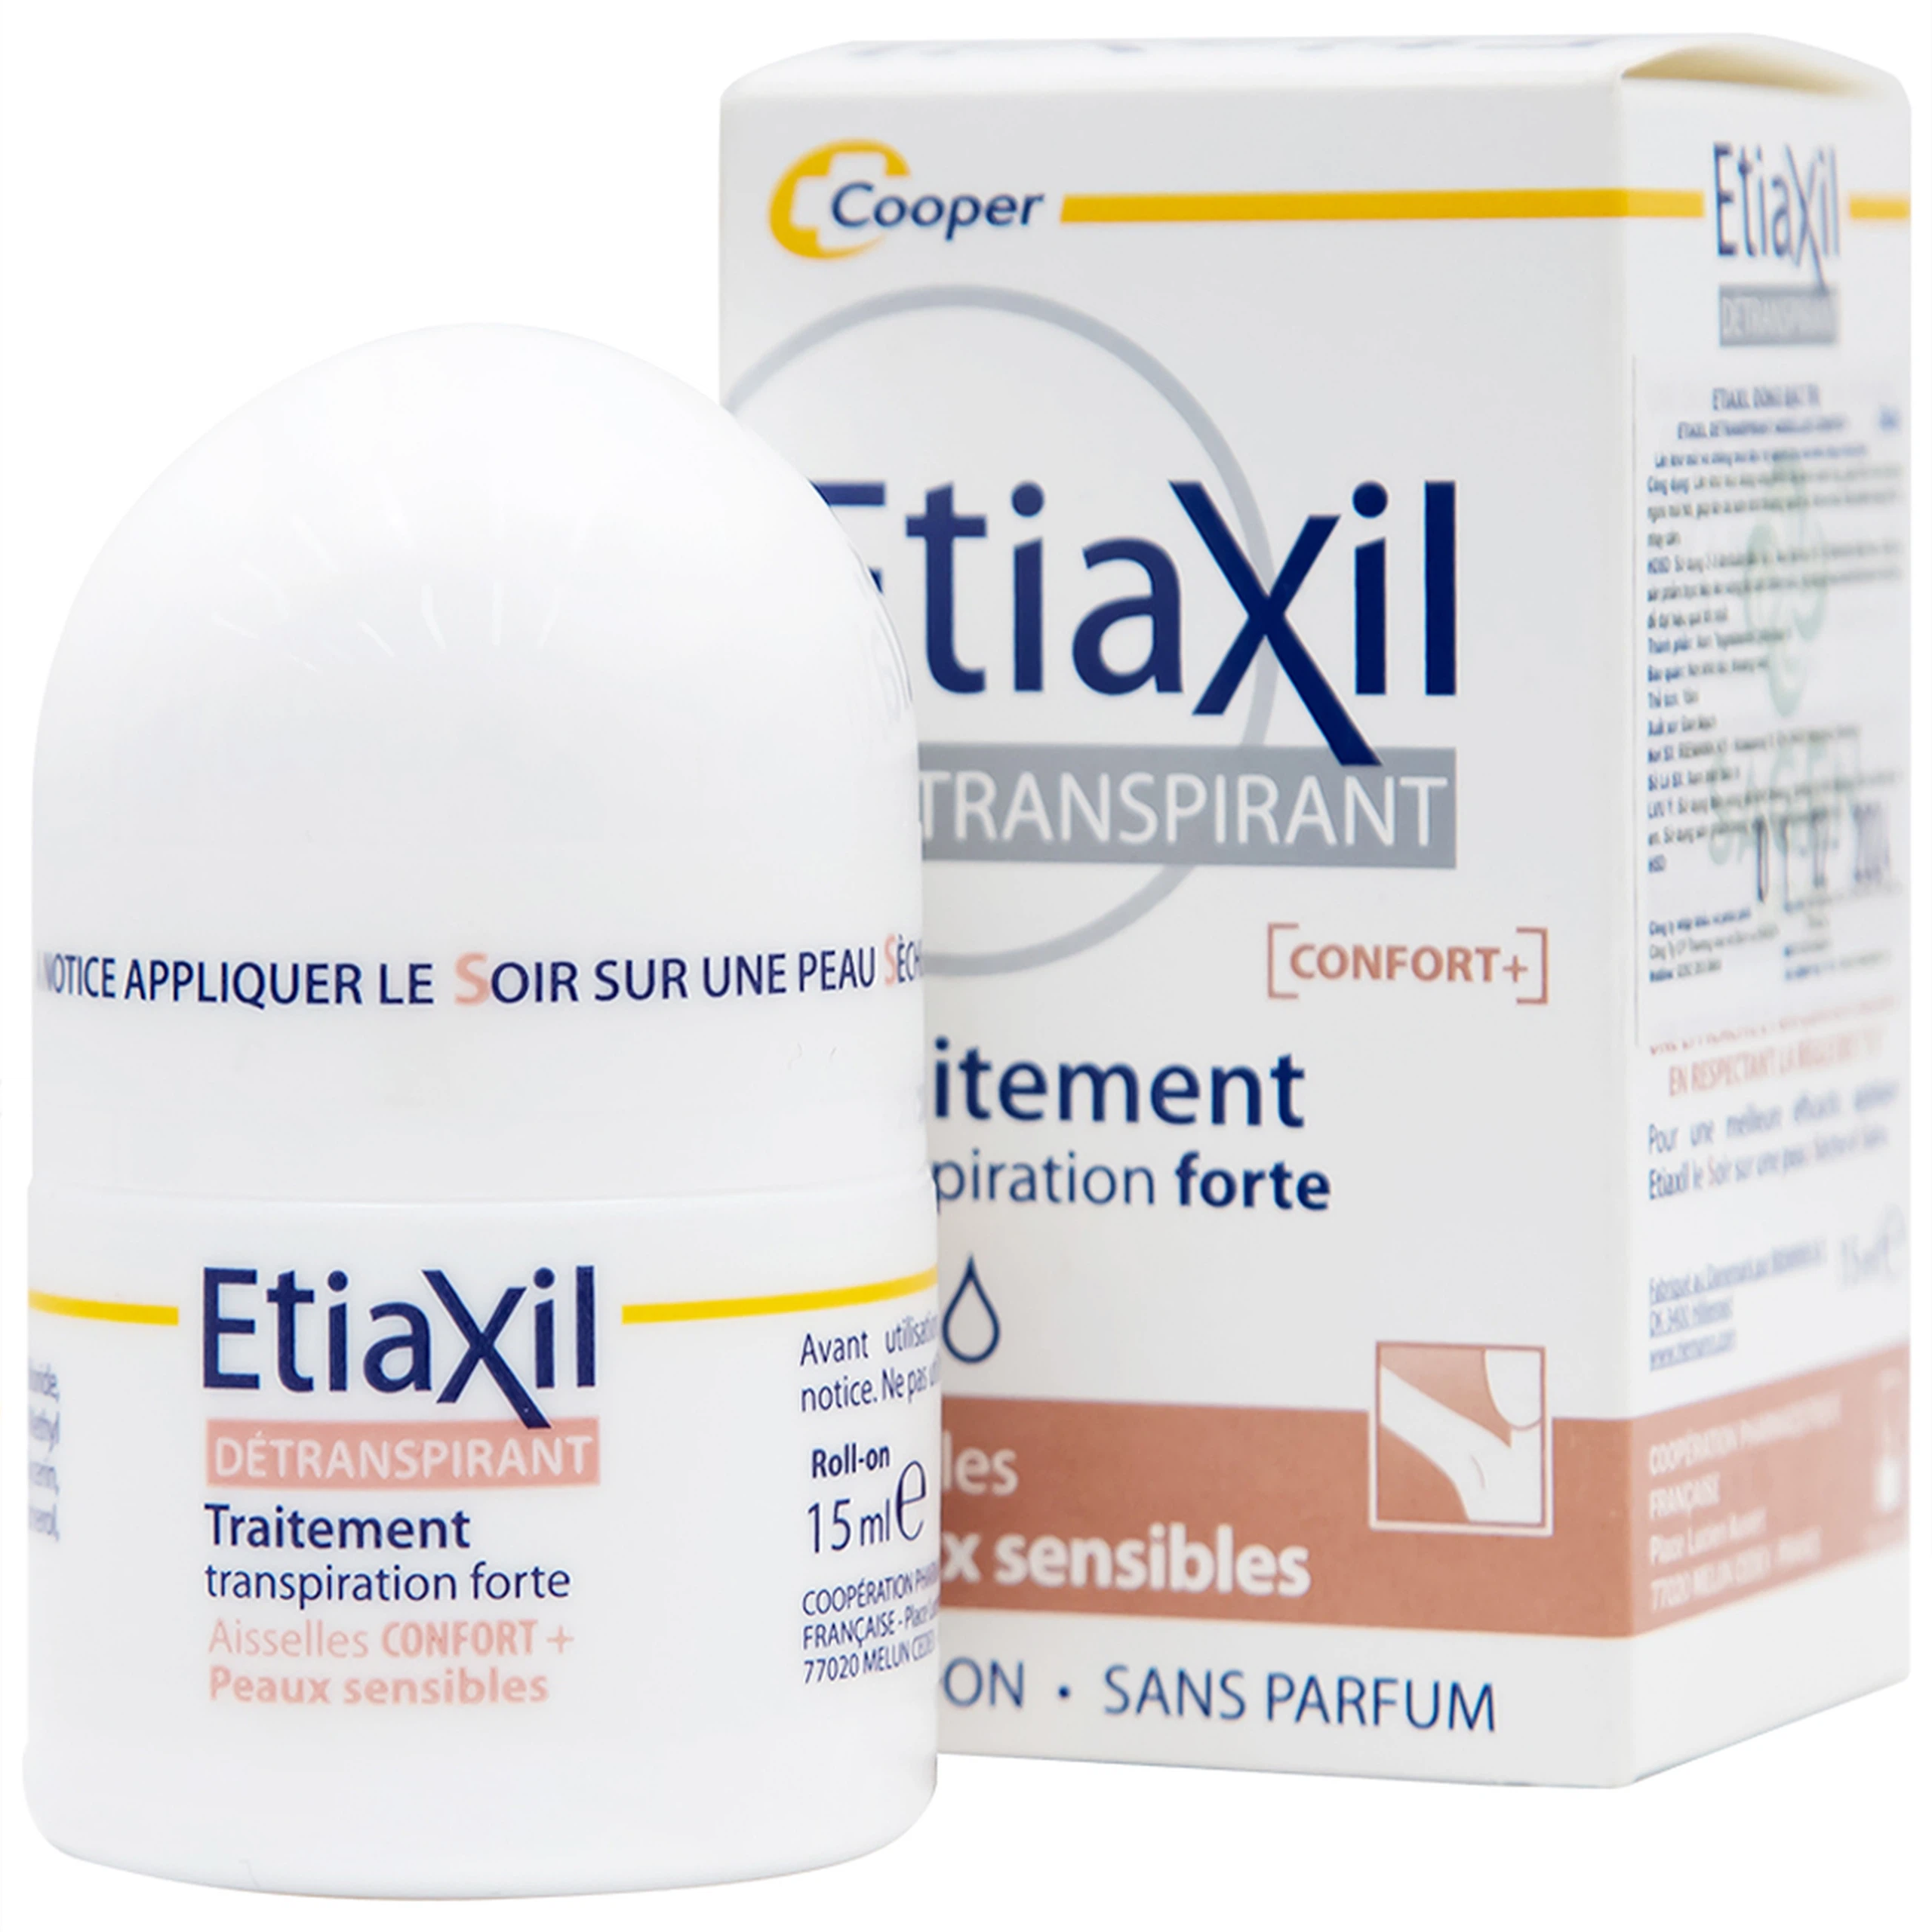 Lăn khử mùi EtiaXil Detranspirant Aisselles Comfort Plus chống mùi đặc trị dành cho da siêu nhạy cảm (15ml)